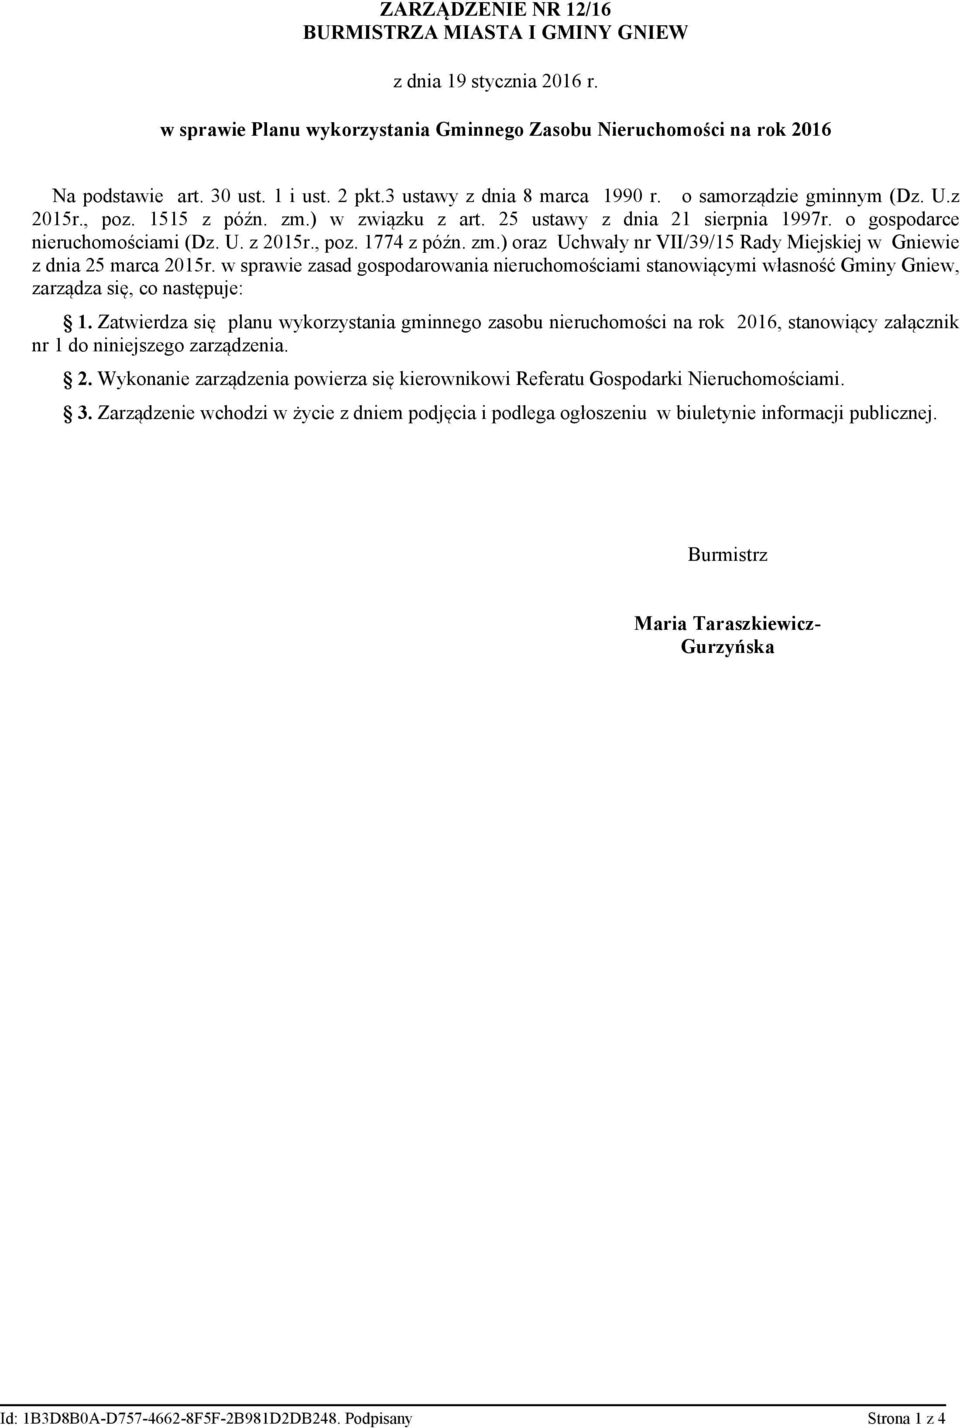 zm.) oraz Uchwały nr VII/39/15 Rady Miejskiej w Gniewie z dnia 25 marca 2015r. w sprawie zasad gospodarowania nieruchomościami stanowiącymi własność Gminy Gniew, zarządza się, co następuje: 1.